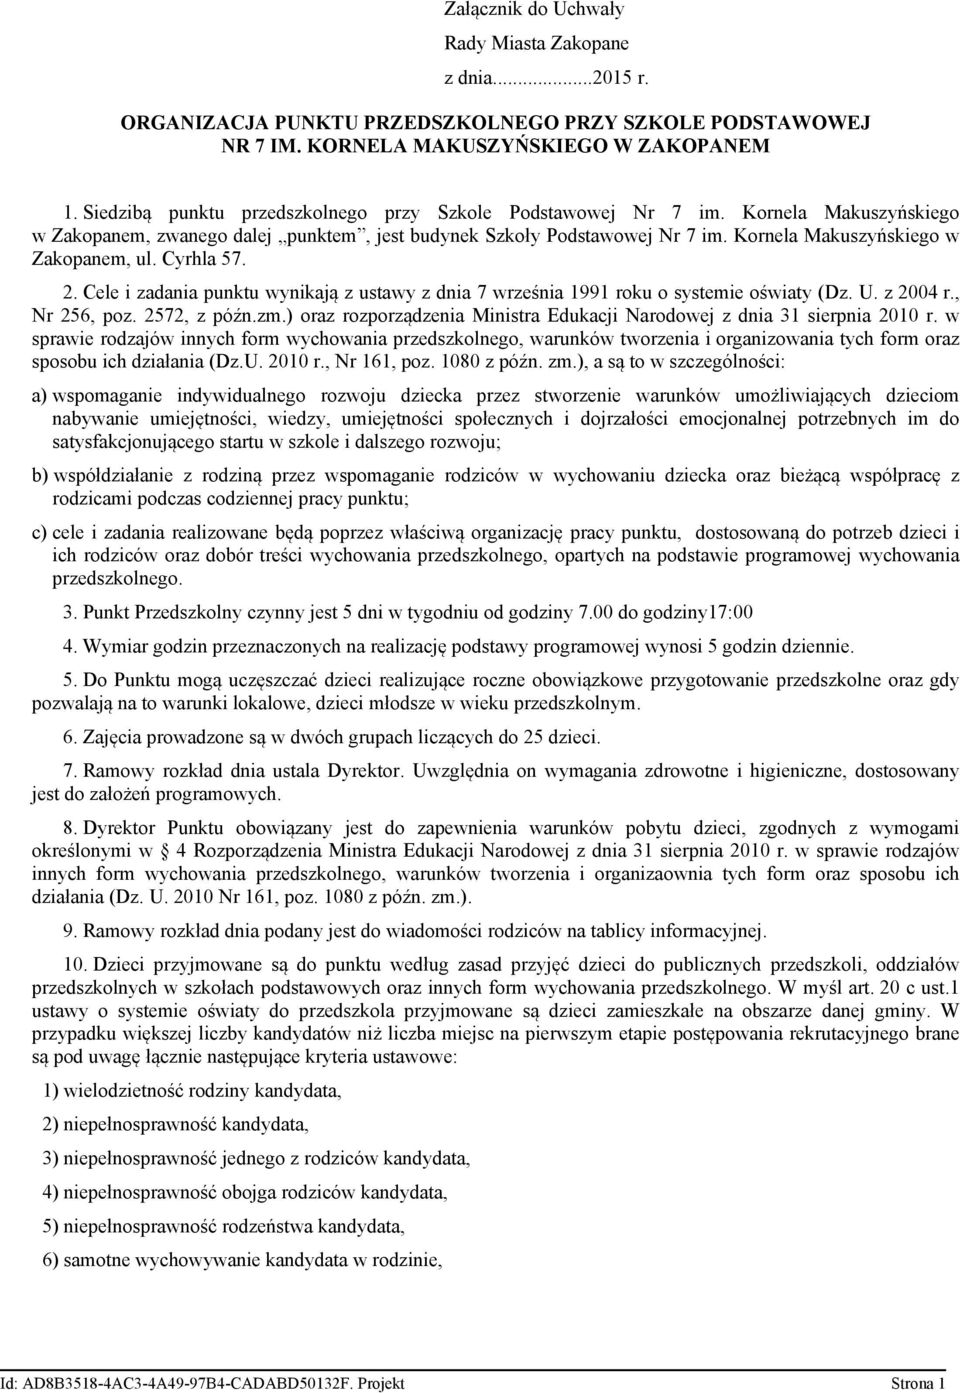 Kornela Makuszyńskiego w Zakopanem, ul. Cyrhla 57. 2. Cele i zadania punktu wynikają z ustawy z dnia 7 września 1991 roku o systemie oświaty (Dz. U. z 2004 r., Nr 256, poz. 2572, z późn.zm.